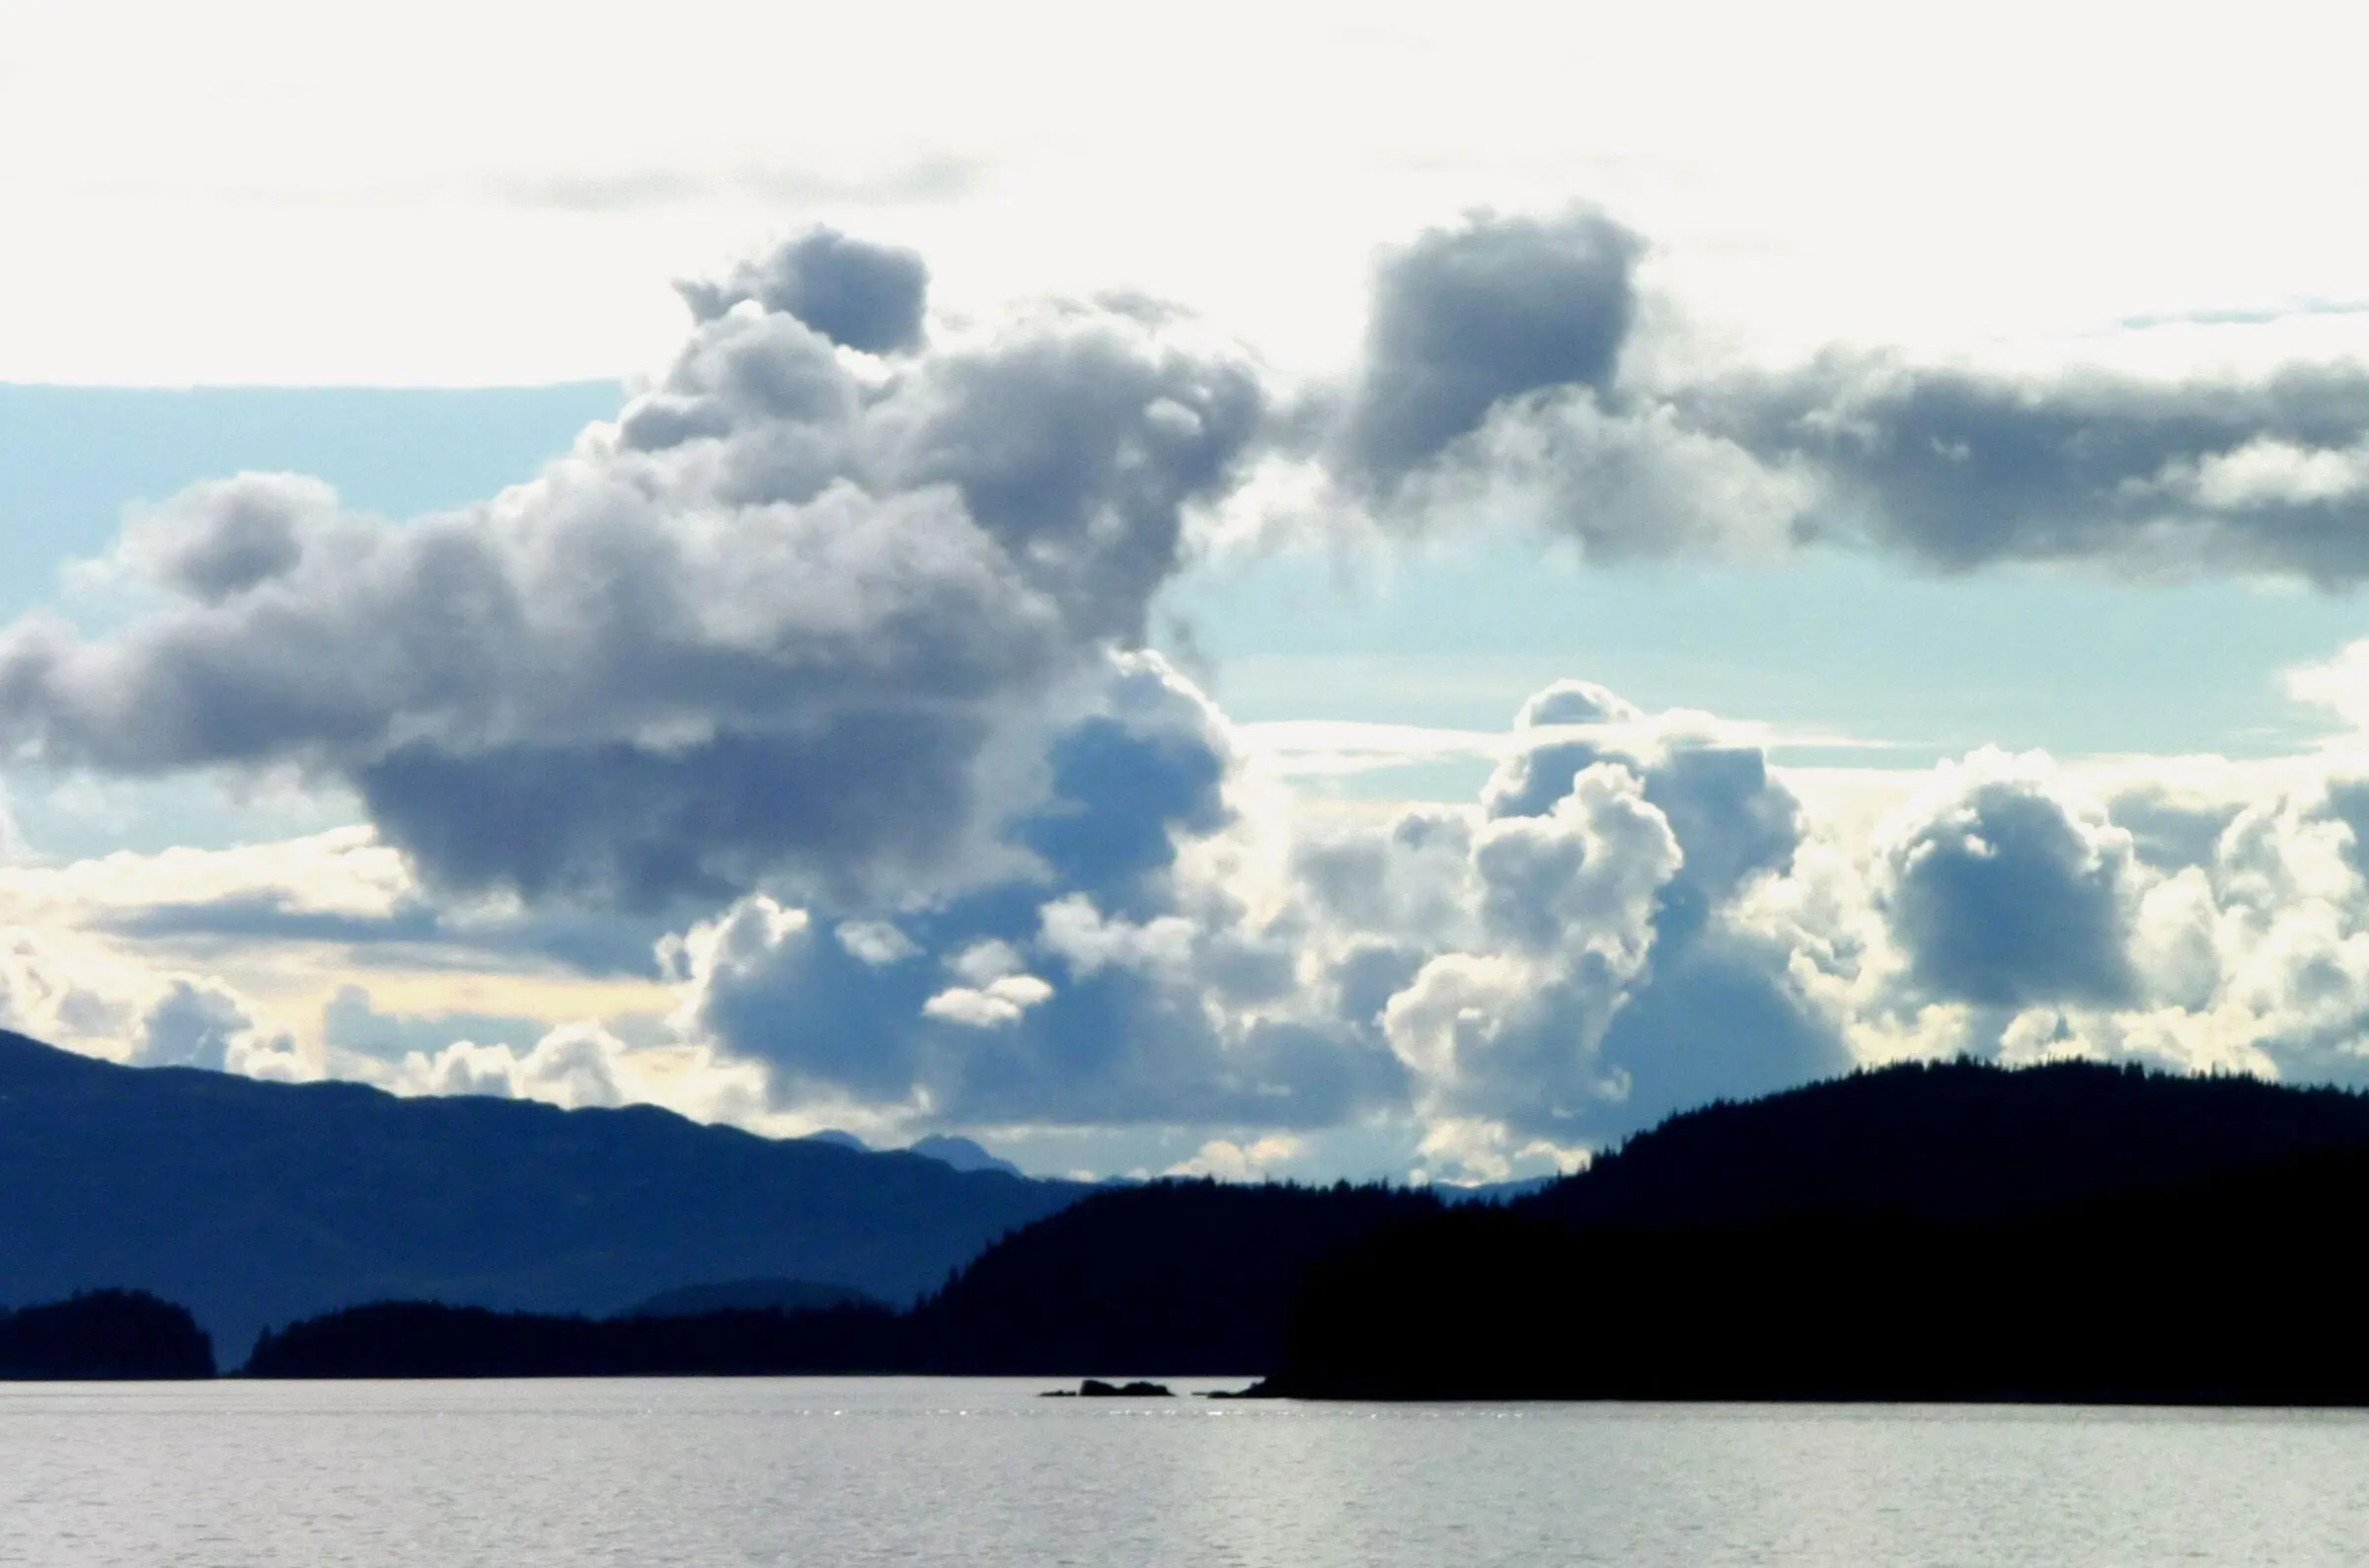 Wolken sichtbares äußeres Milieu Stimmung gefühltes inneres Milieu Prince - фото 2